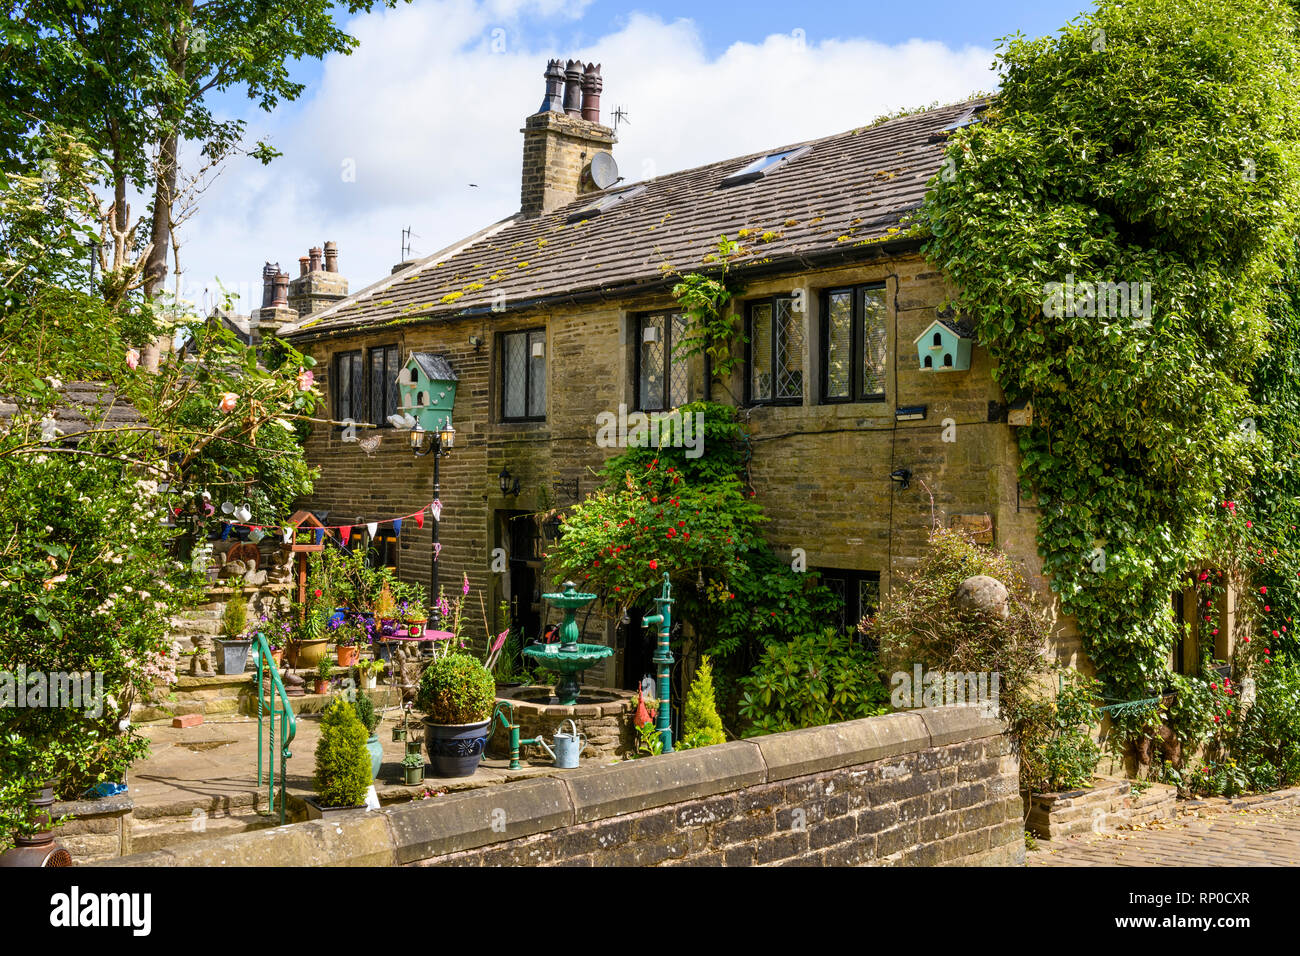 Attraktive malerisches traditionelles Steinhaus mit dekorativen Funktionen in Terrasse Garten (Brunnen & Pflanzmaschinen) - Haworth, West Yorkshire, England, Großbritannien Stockfoto